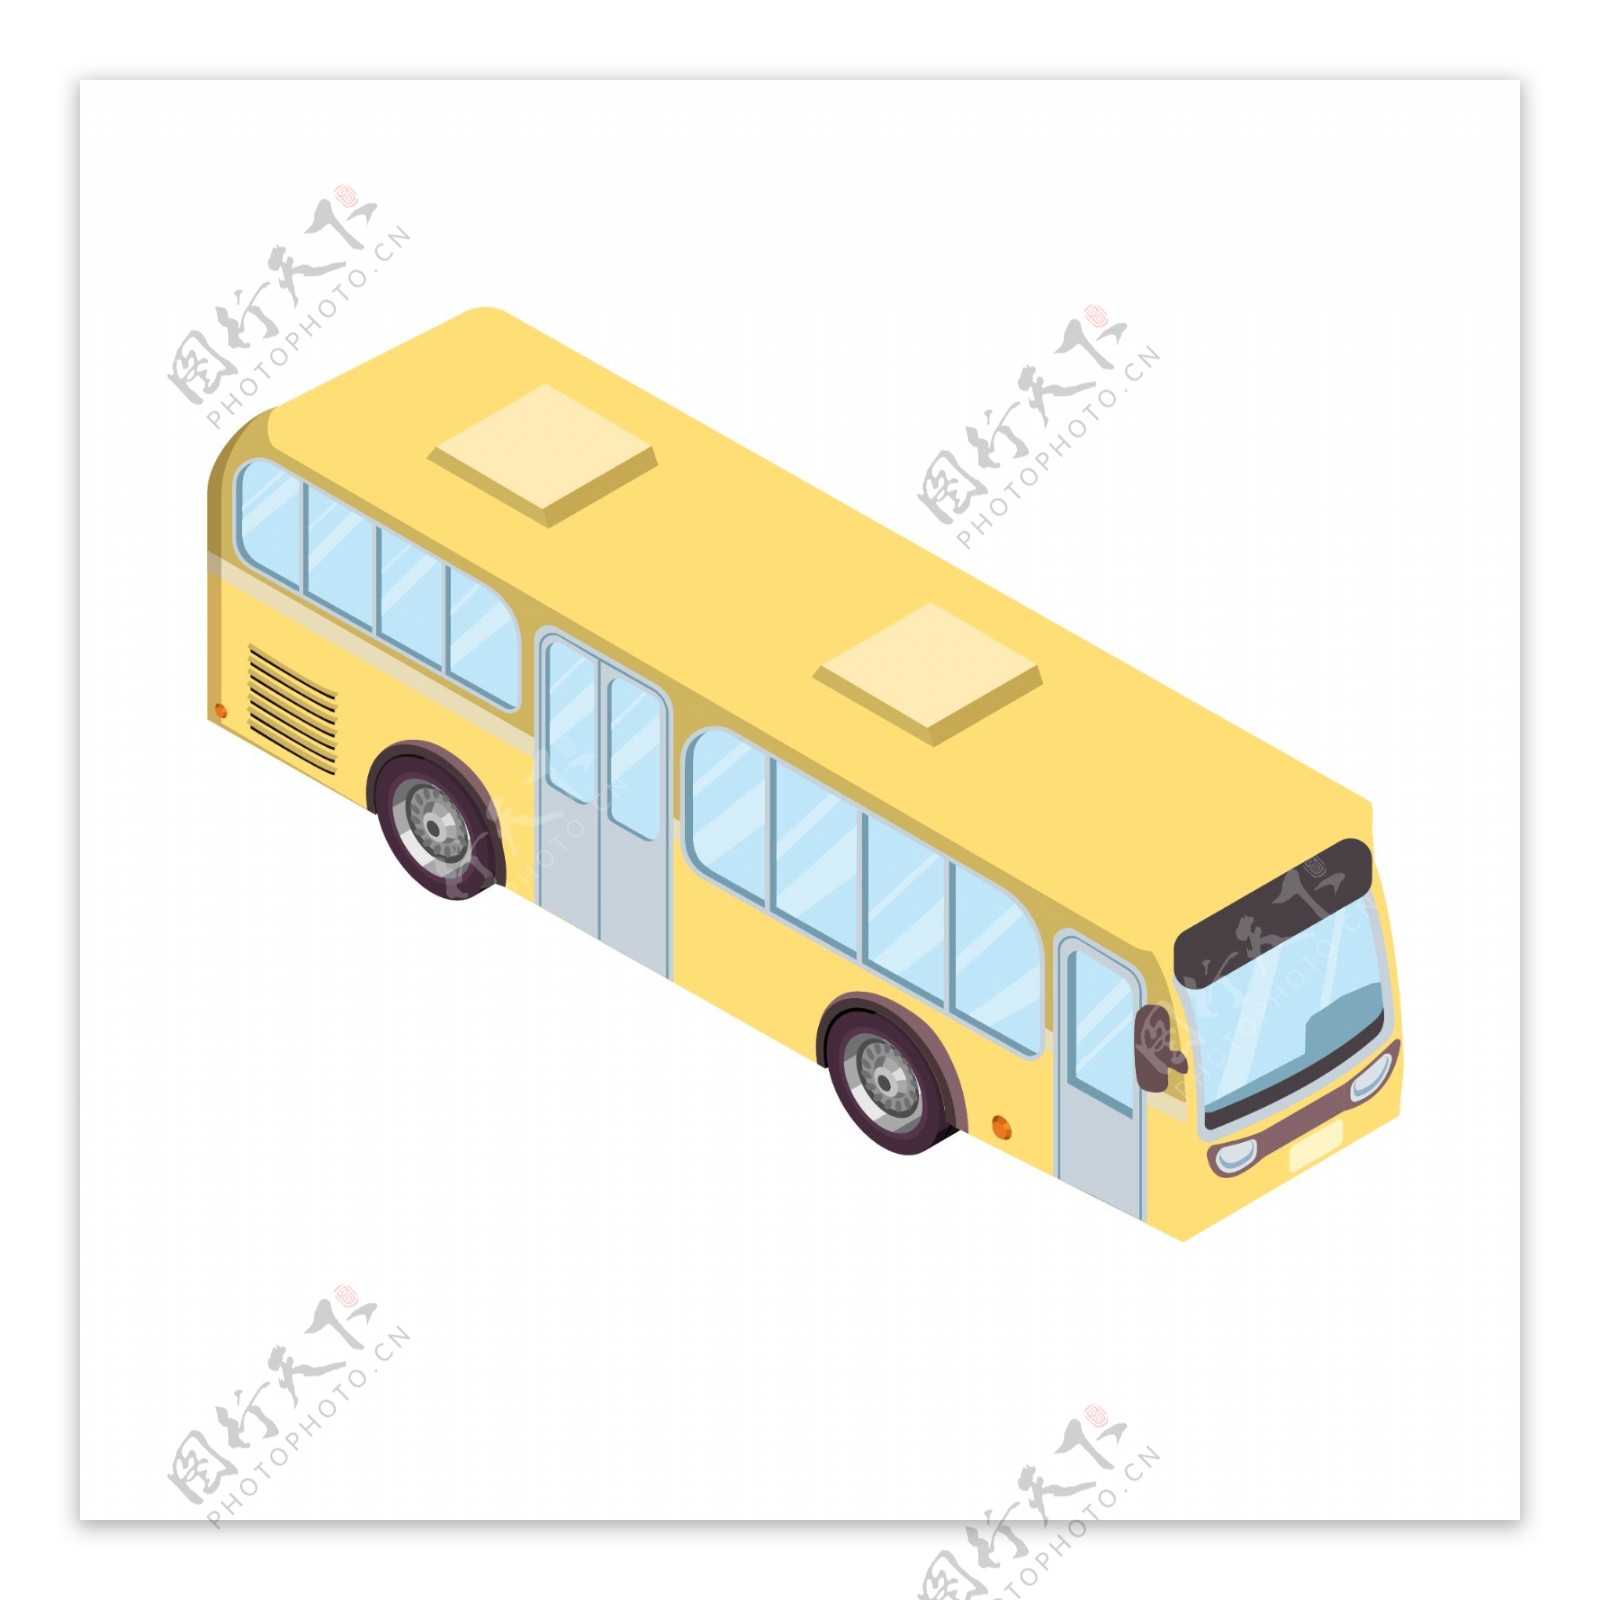 2.5D公共交通工具公交车可商用元素